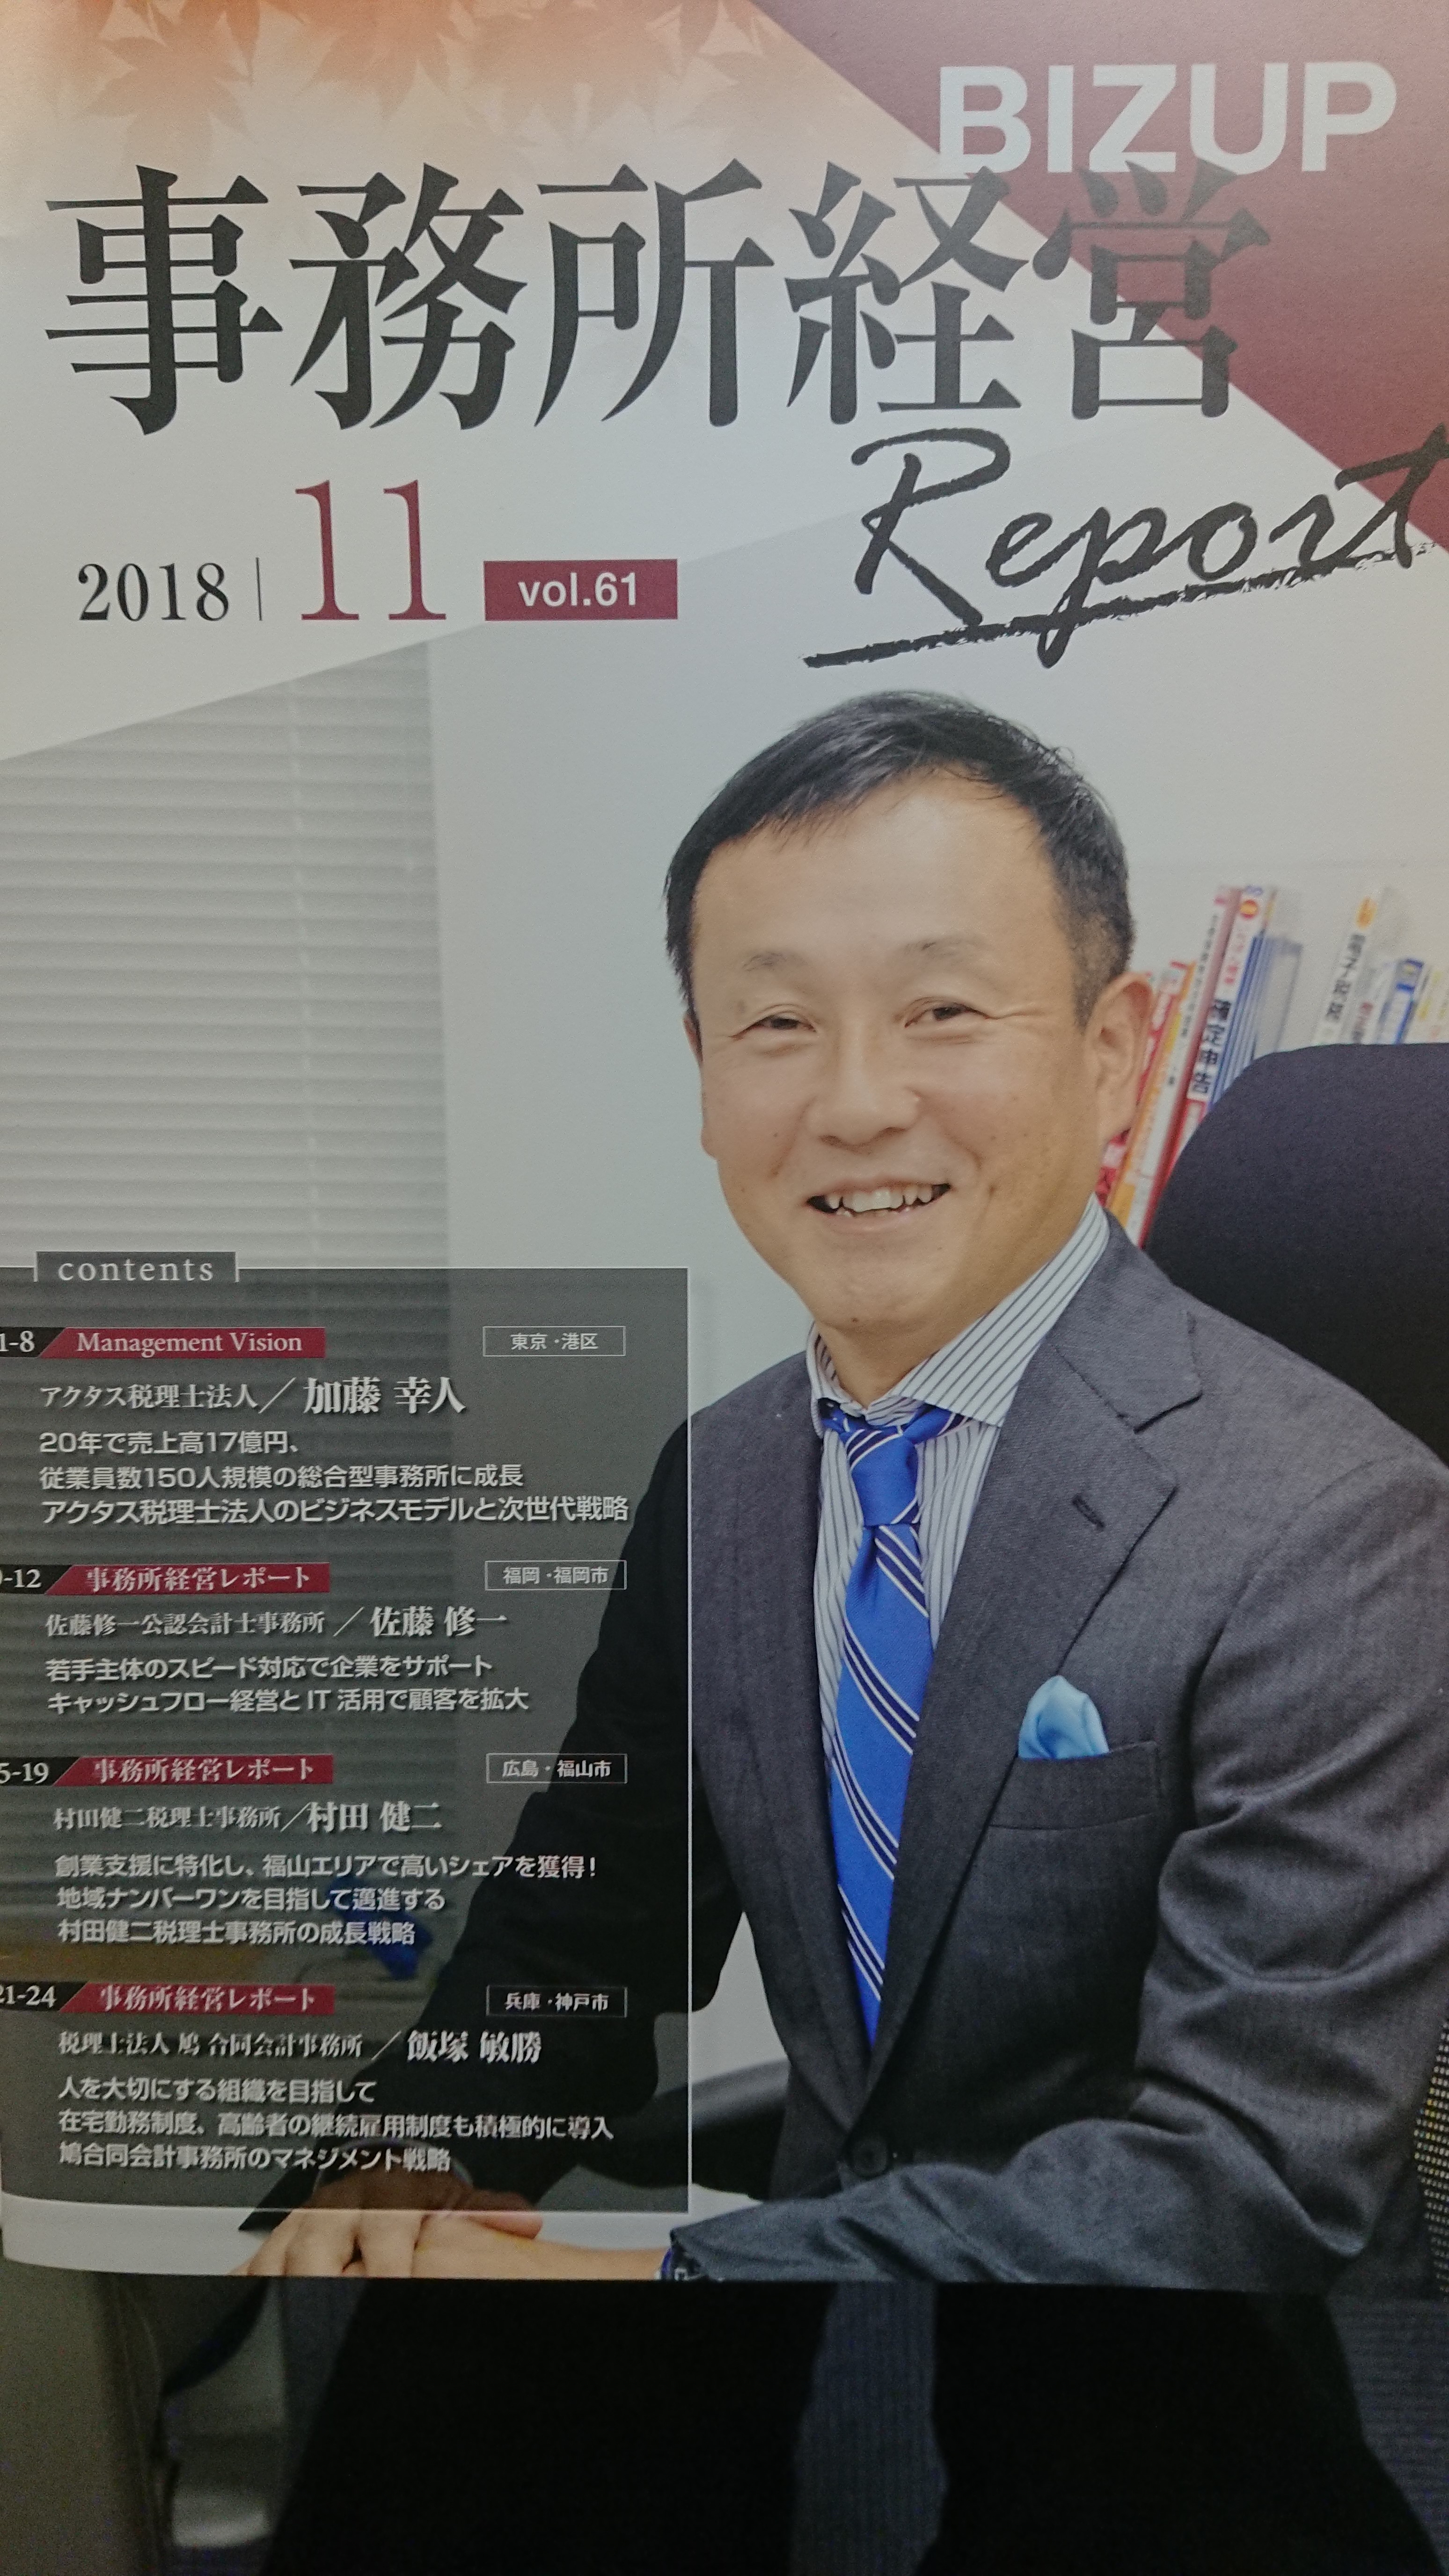 福岡の税理士のメディア掲載実績